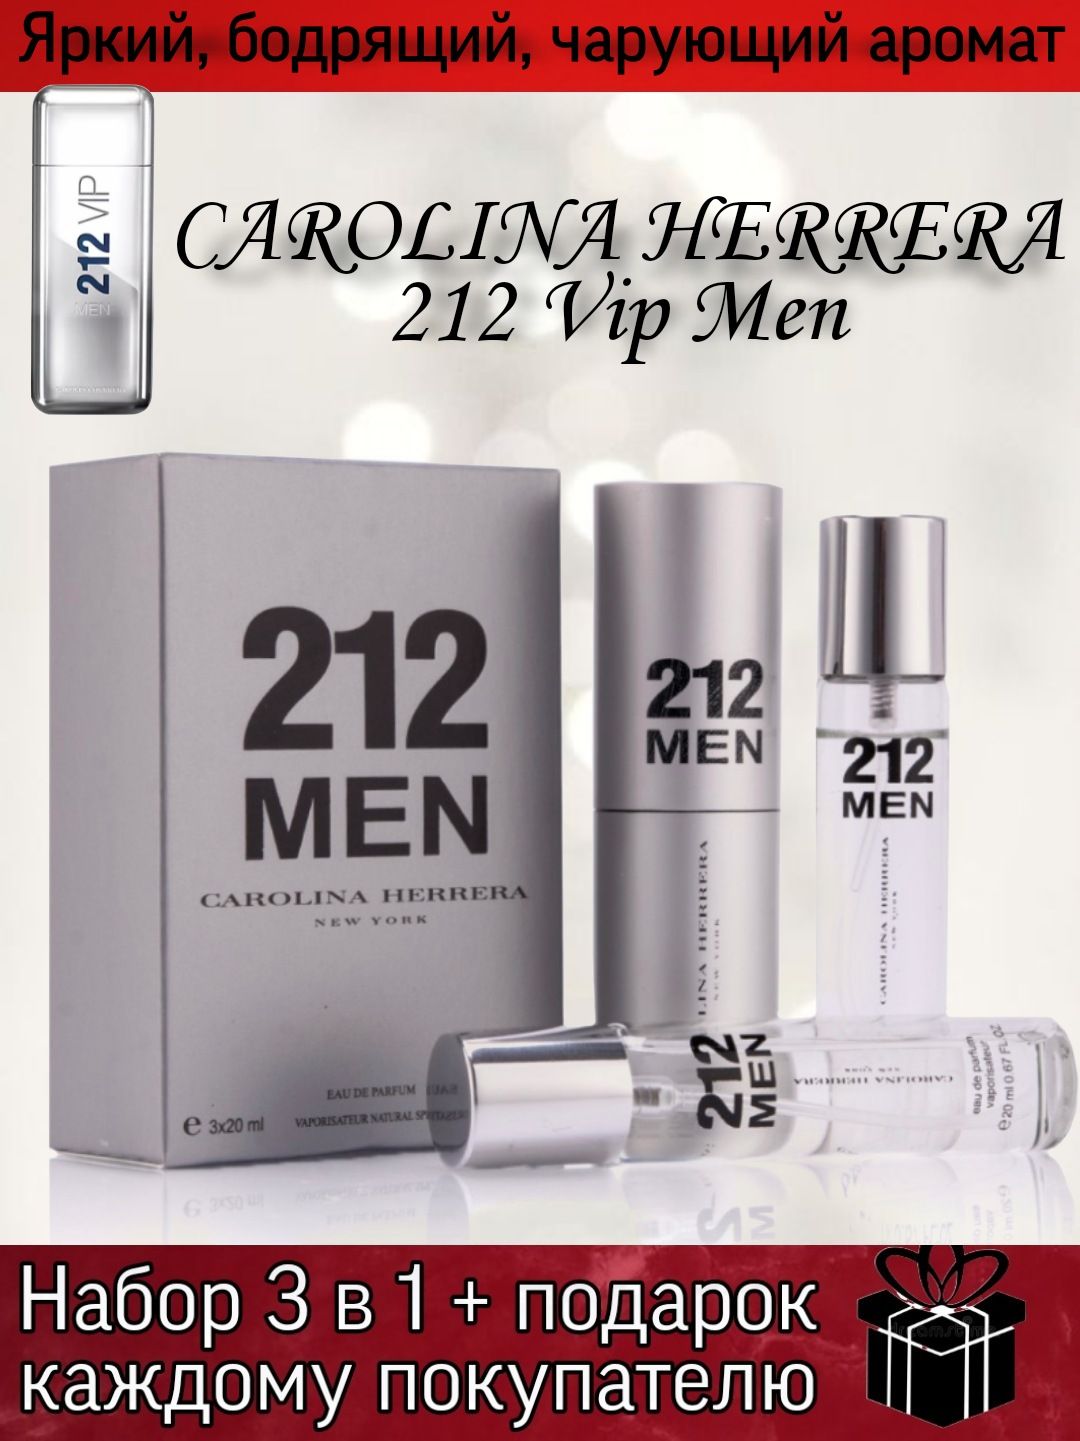 Мужской парфюм 212. Carolina Herrera 212 men. Туалетная вода Carolina Herrera 212 men. Carolina Herrera "212 men" 3 х 20 ml.